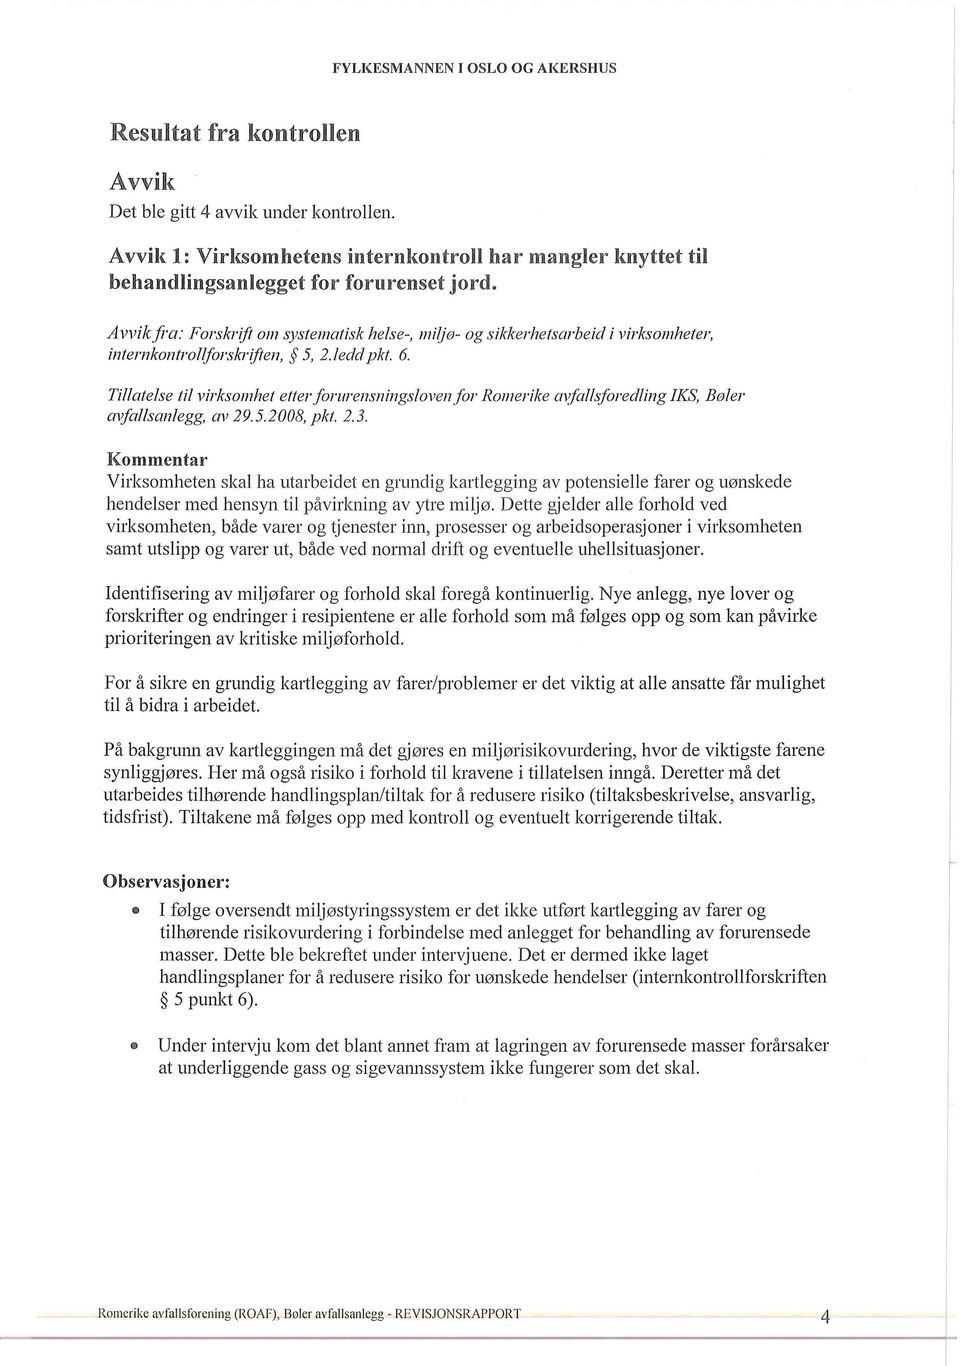 Tillatelse til virksomhet etterforllrensningsloven for Romerike avfallsforedling IKS, Bøler mfallsanlegg, av 29.5.2008, pkt. 2.3.